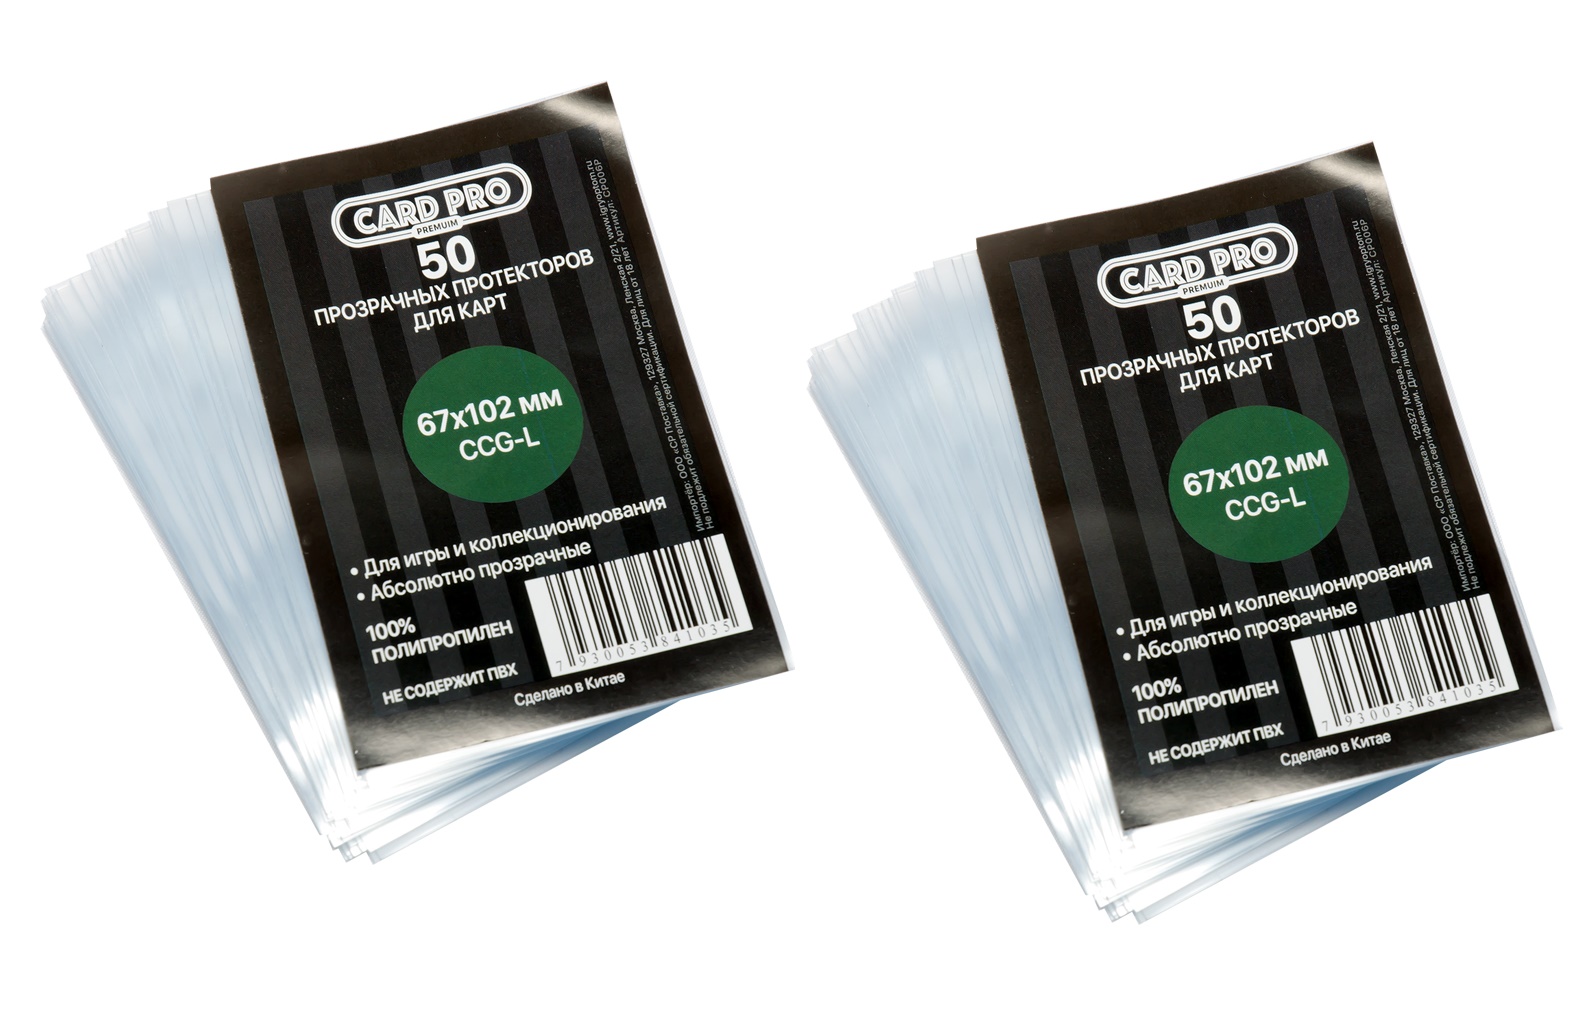 Прозрачные протекторы card-pro premium ccg-l для настольных игр 67x102 мм (2 пачки)